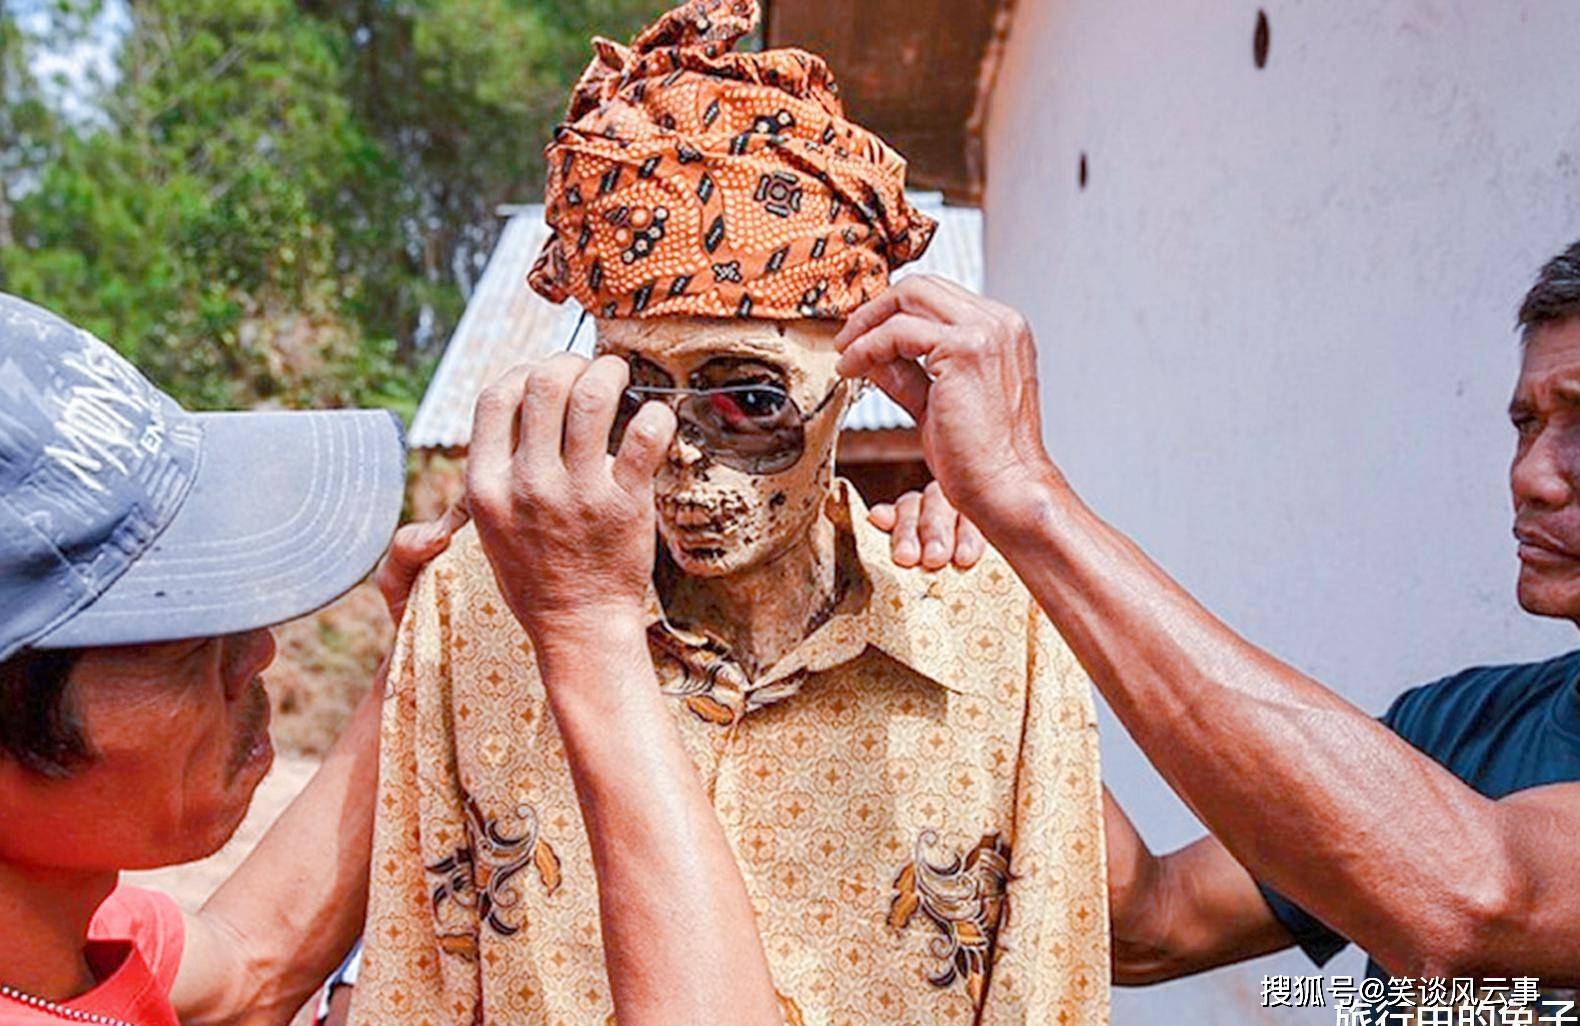 原创让人害怕的印度小村每逢过节挖出先祖尸骨盛装跳舞